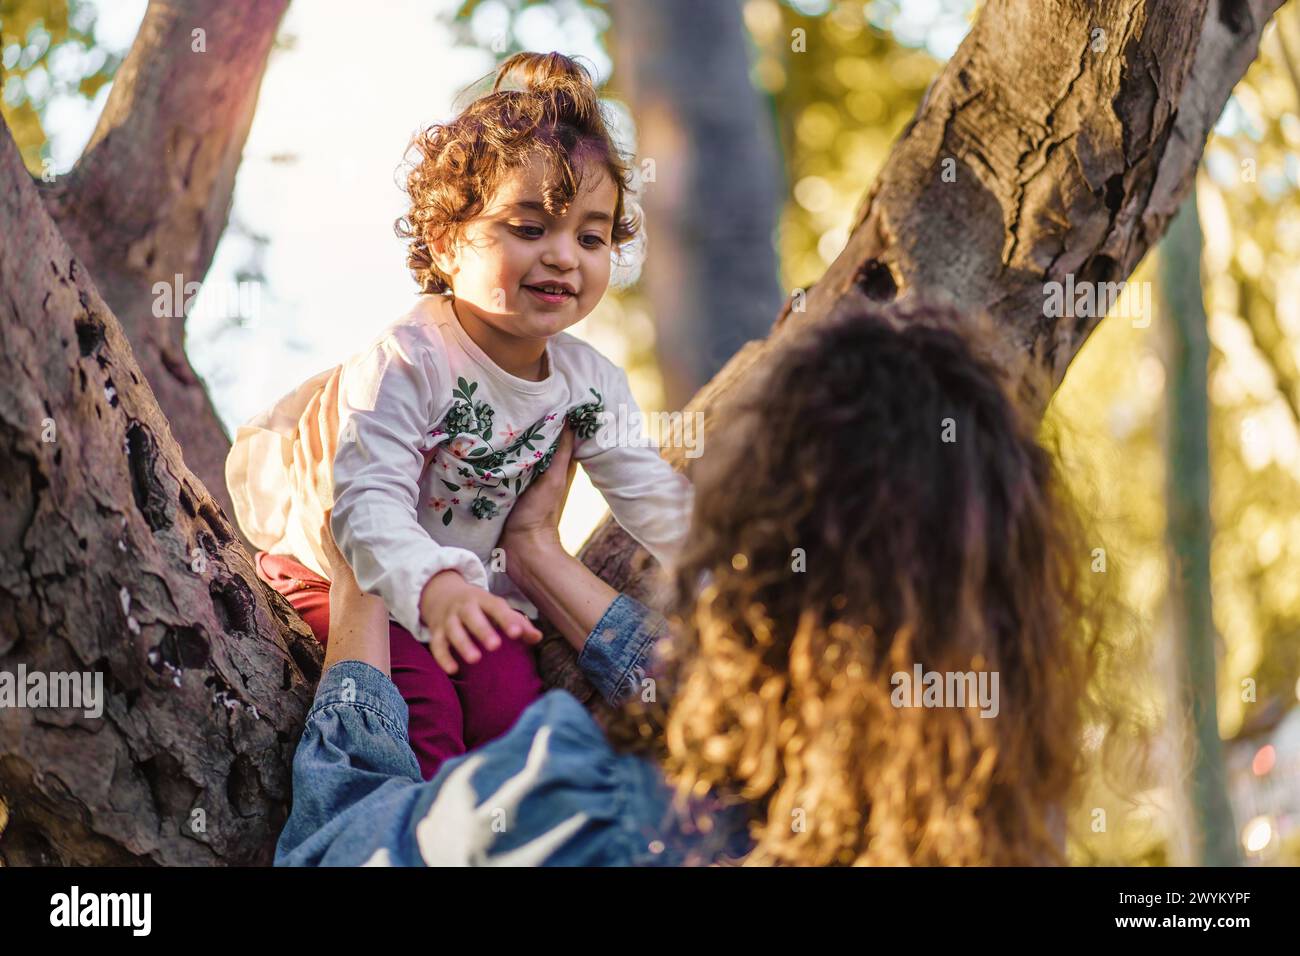 Nel cuore del parco, la cura di una mamma brilla mentre sostiene la scalata della sua bambina su un ramo d'albero: L'amore dei genitori e semplici gioie Foto Stock